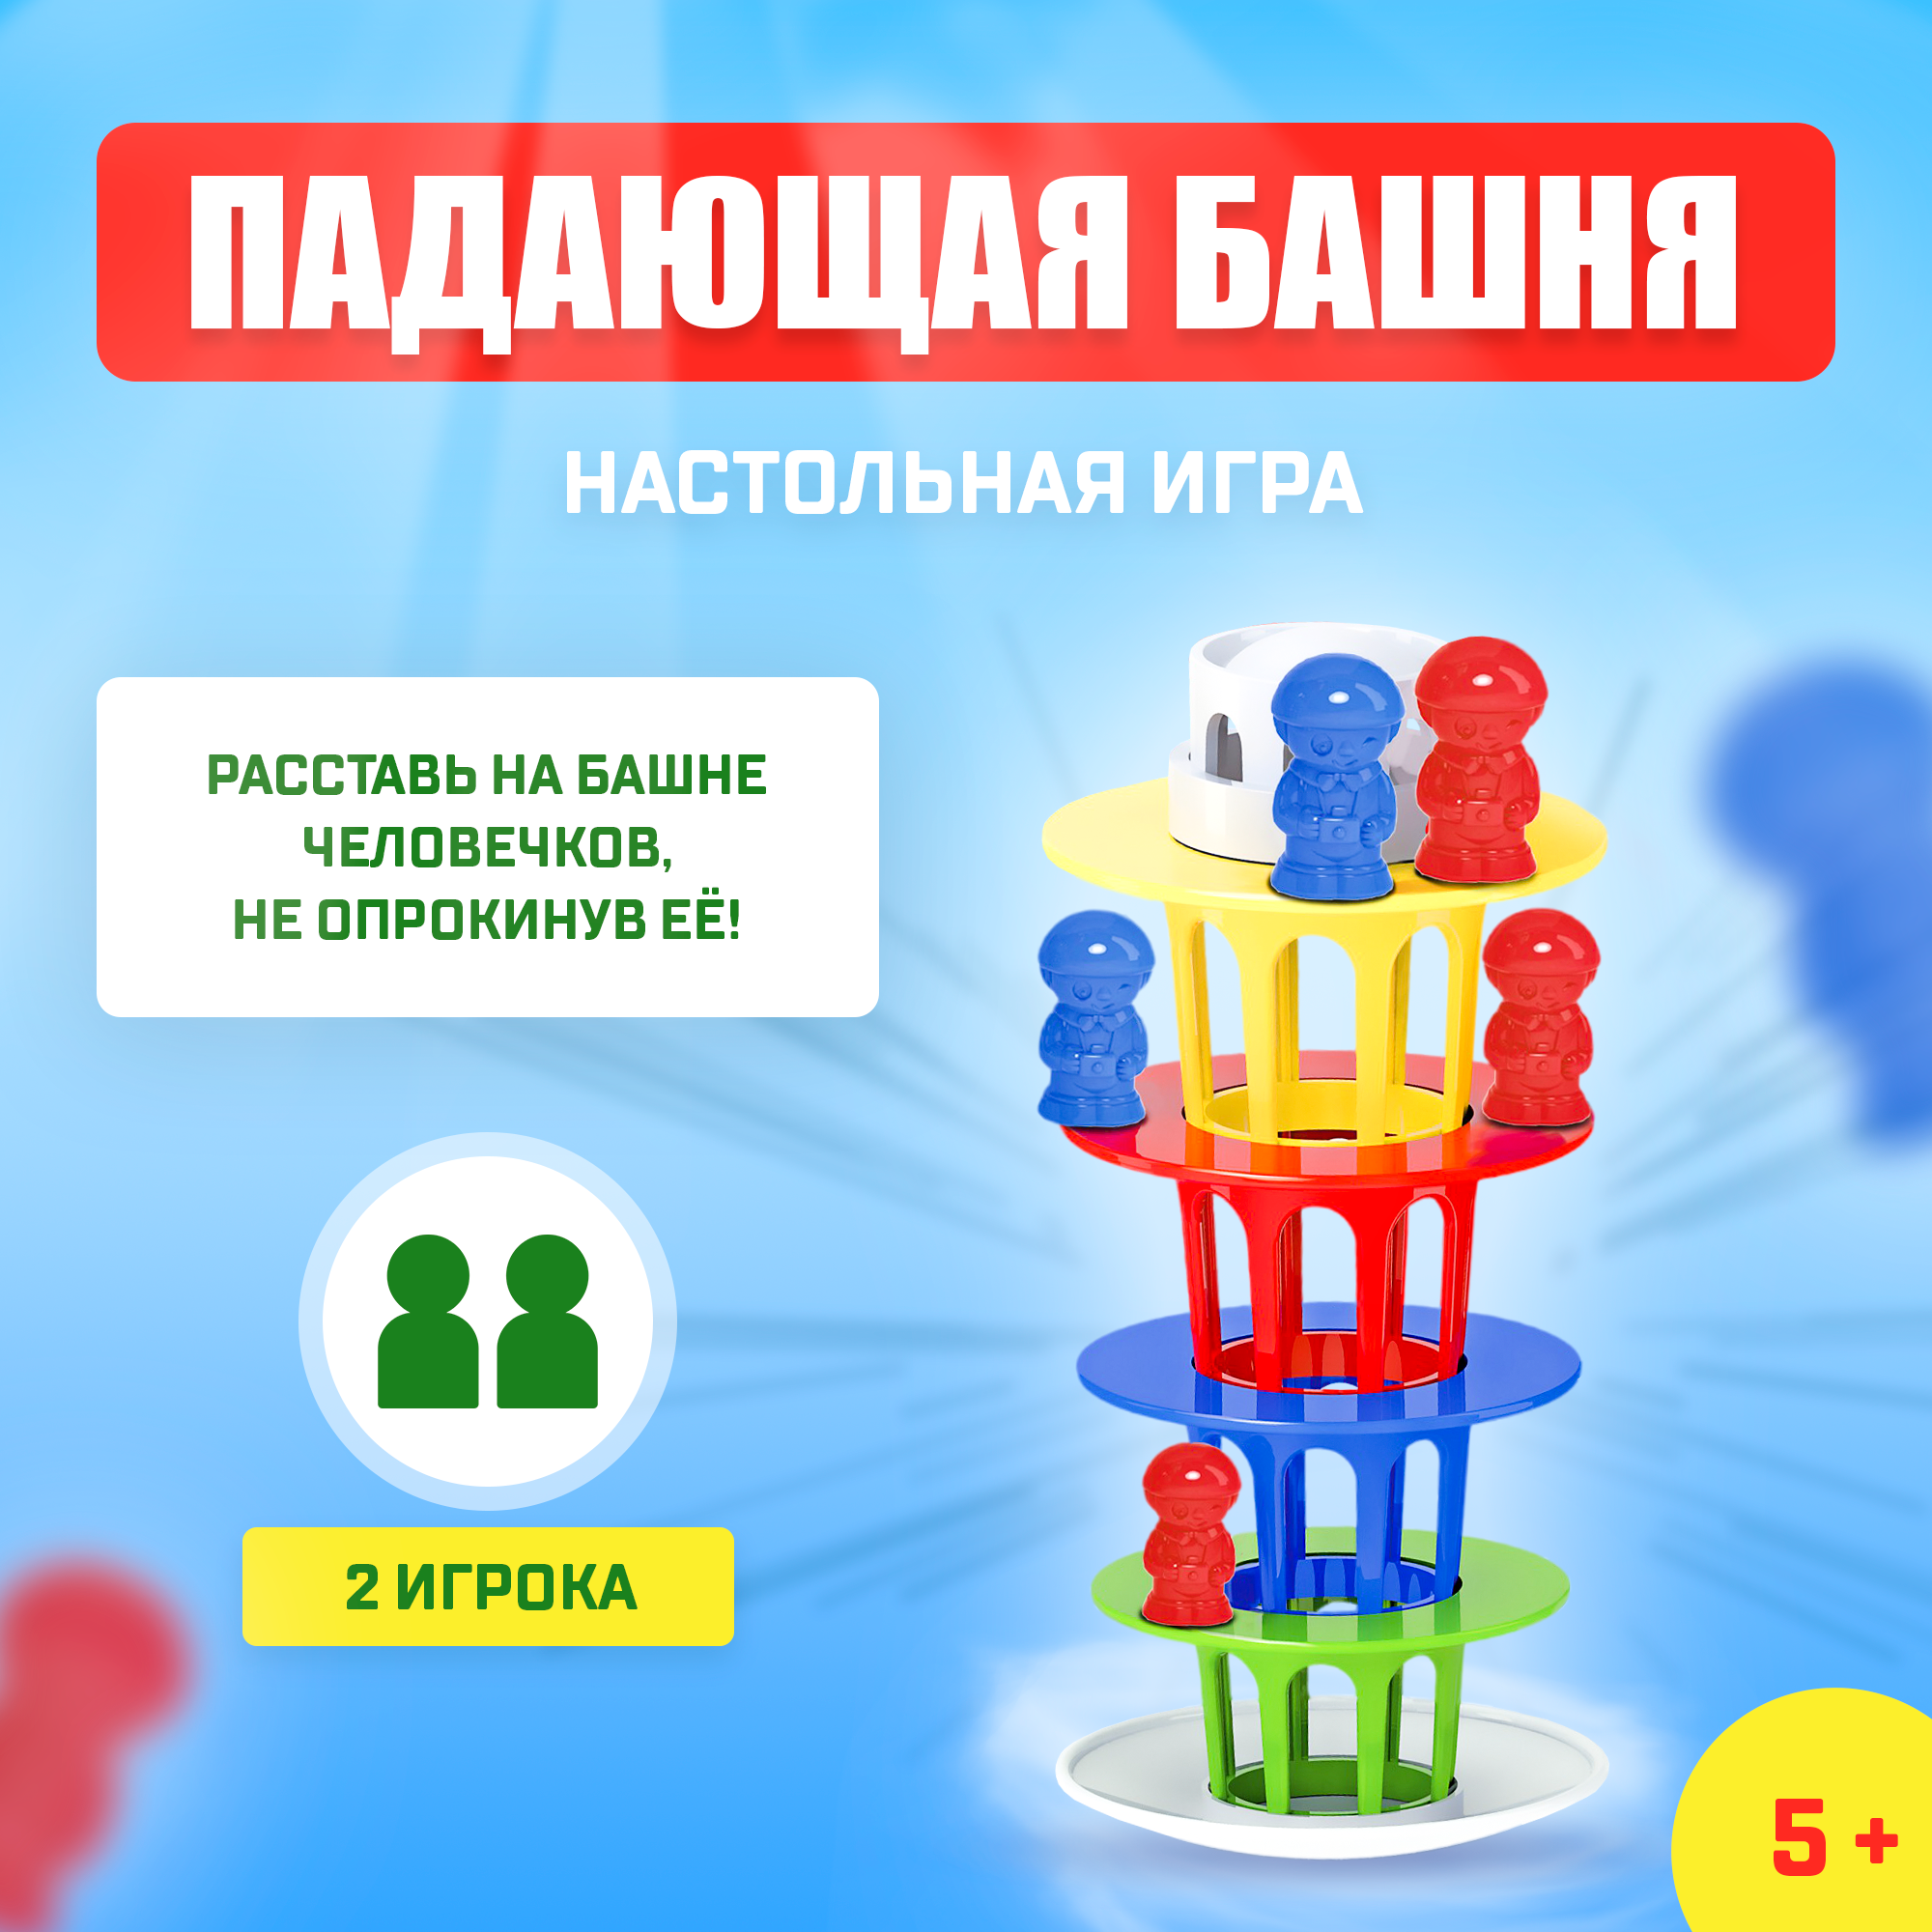 Настольная игра "Падающая башня", на равновесие, 20 человечков, кубик в комплекте, для всей семьи, для детей и малышей